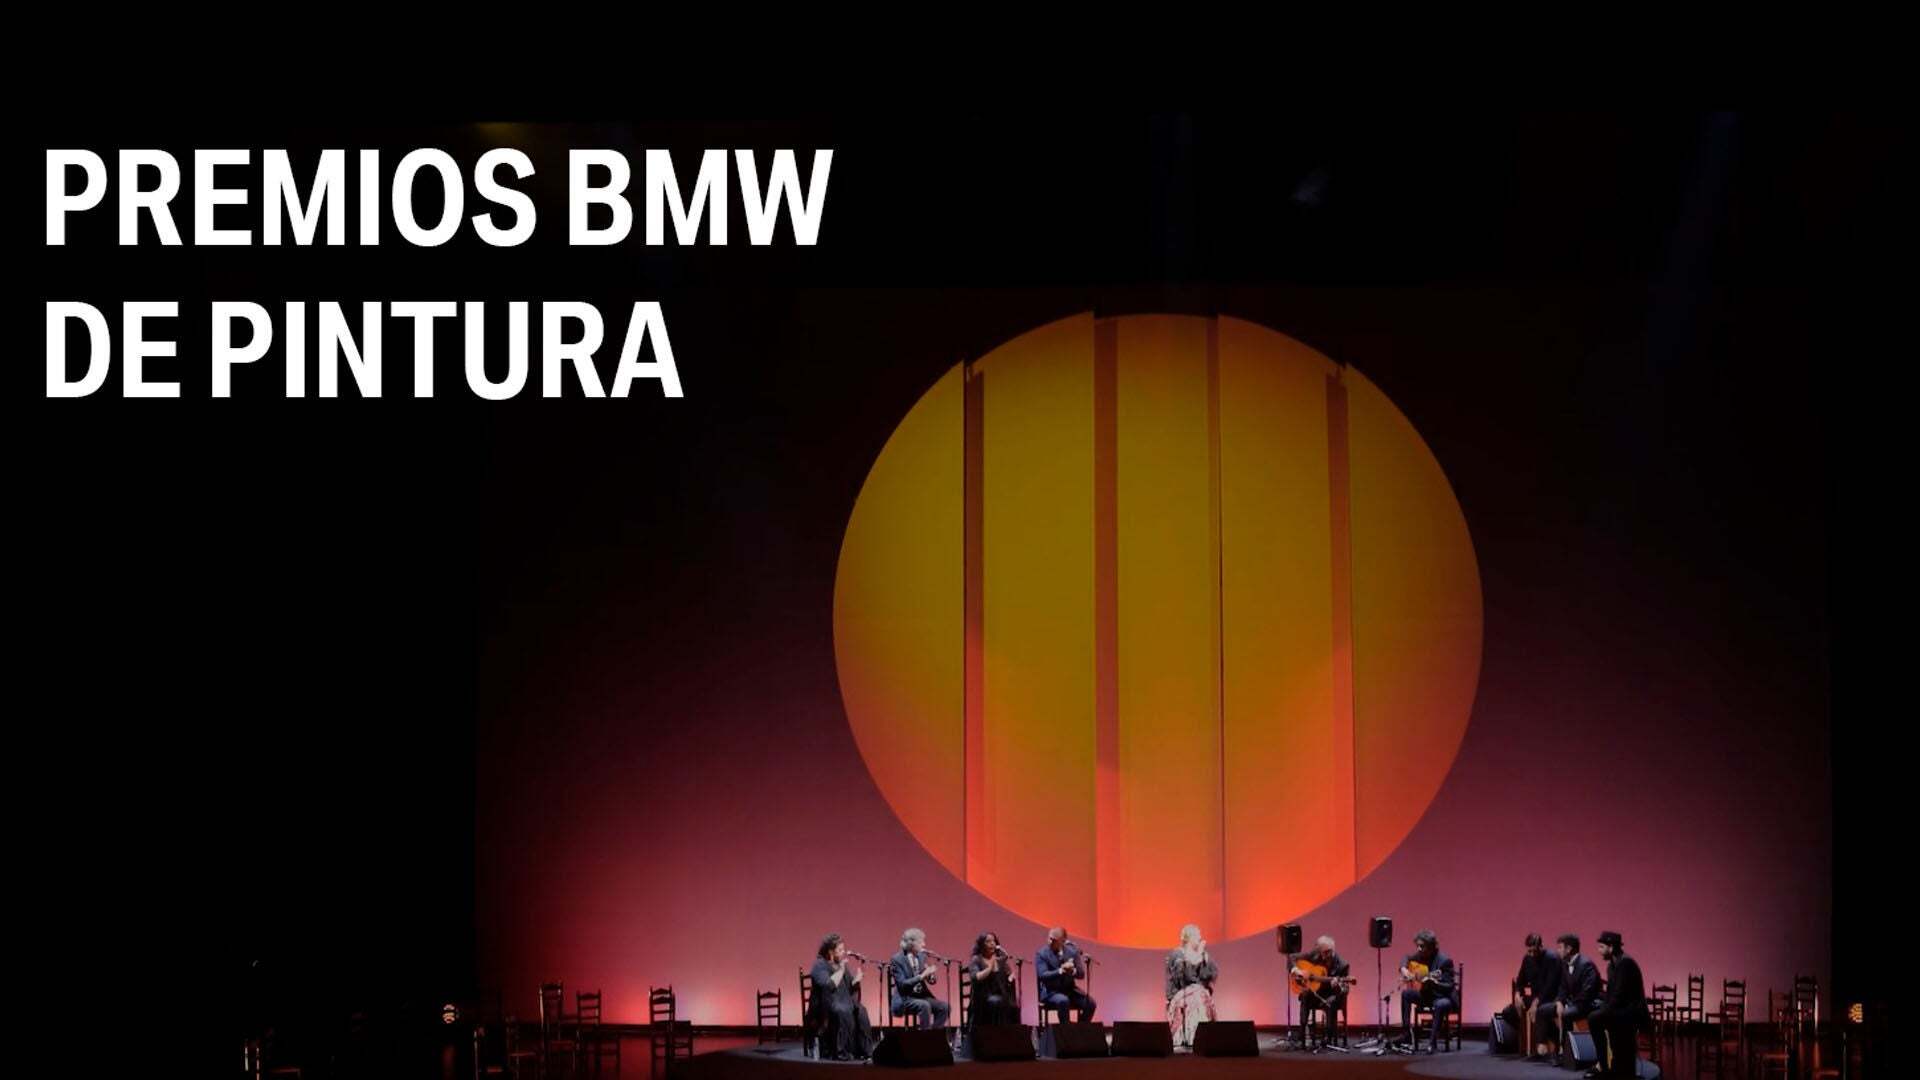 Premios BMW de pintura 2020